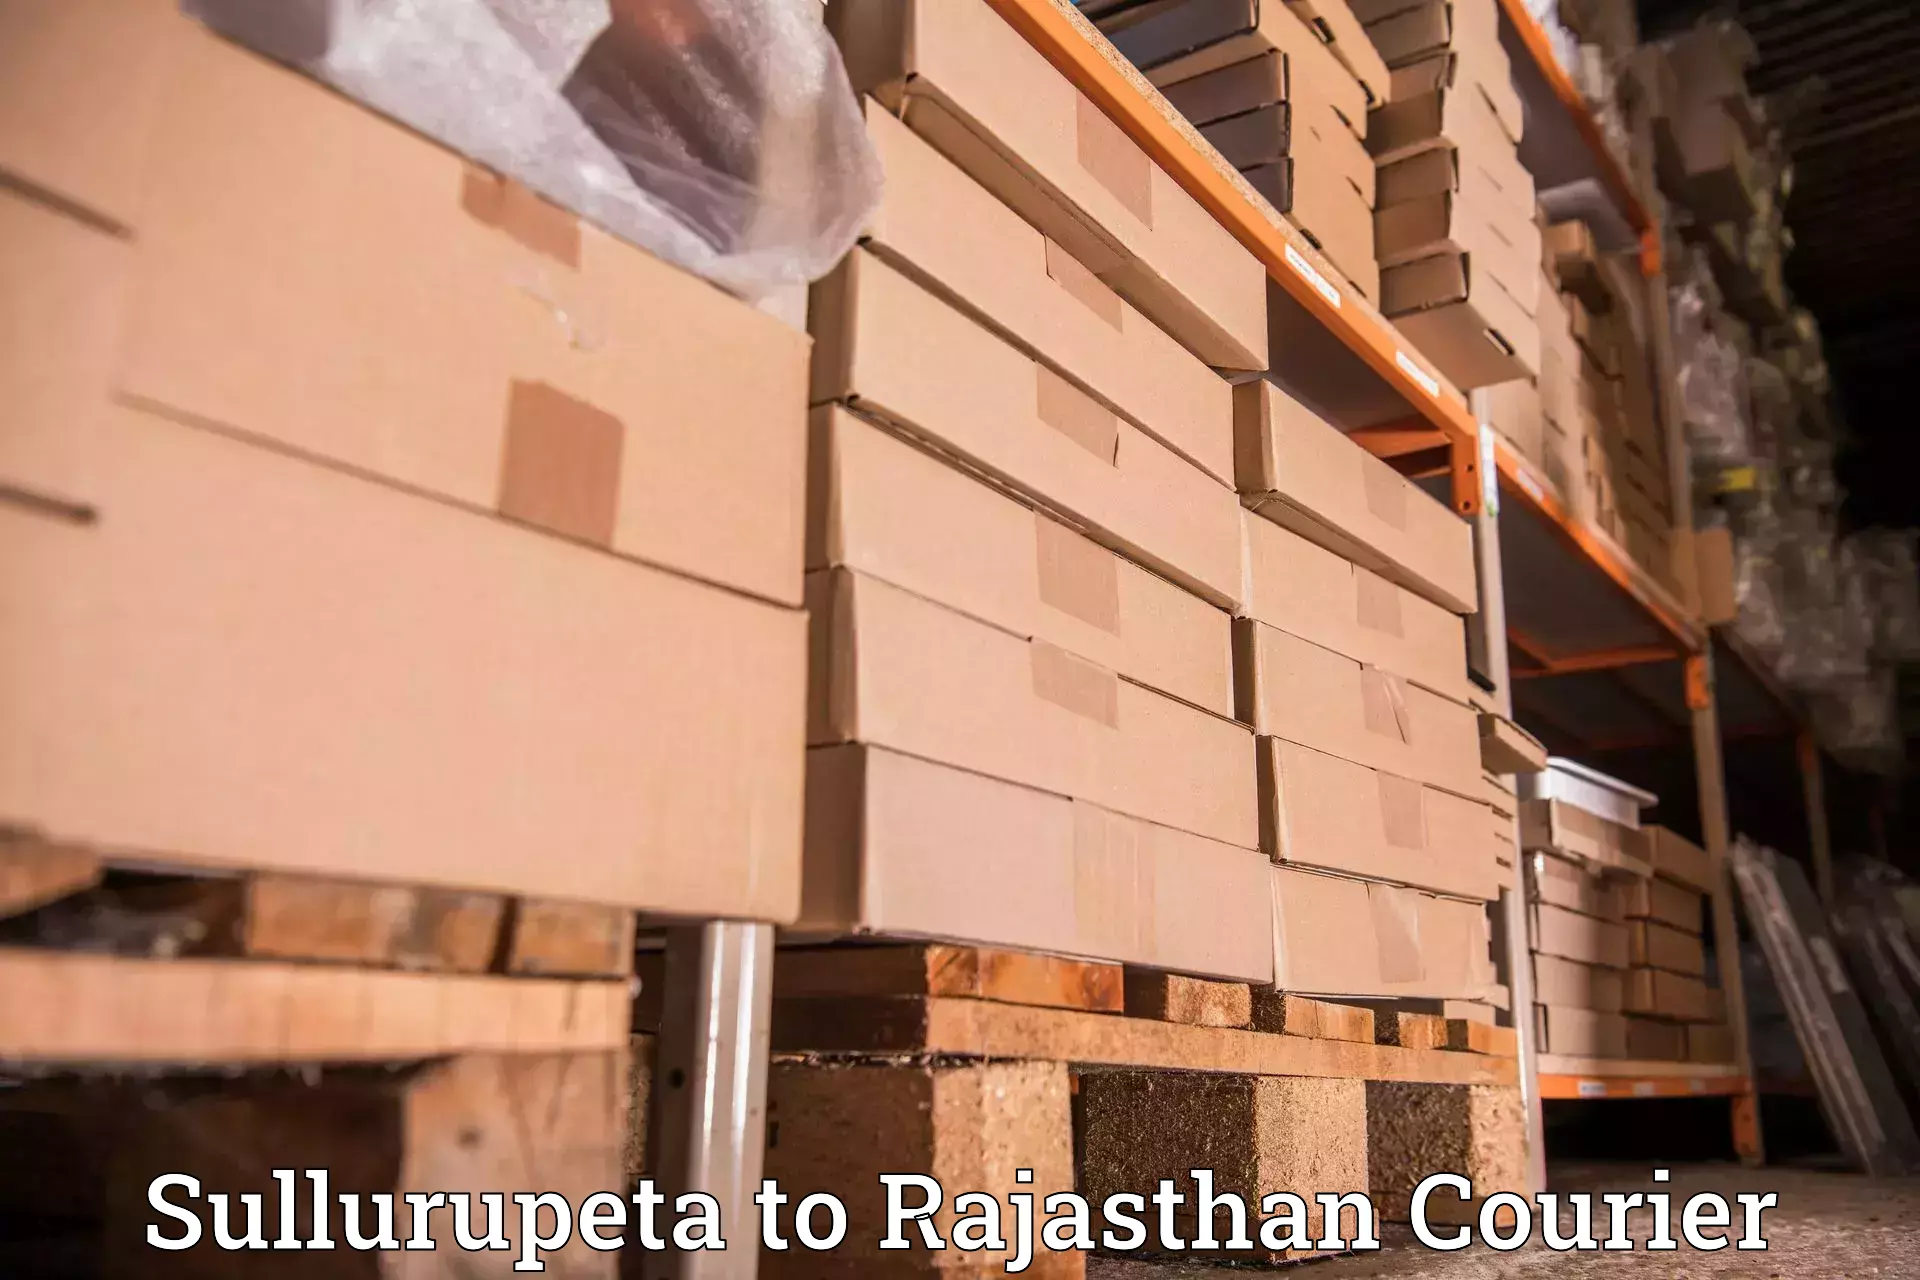 Sustainable shipping practices Sullurupeta to Kotputli